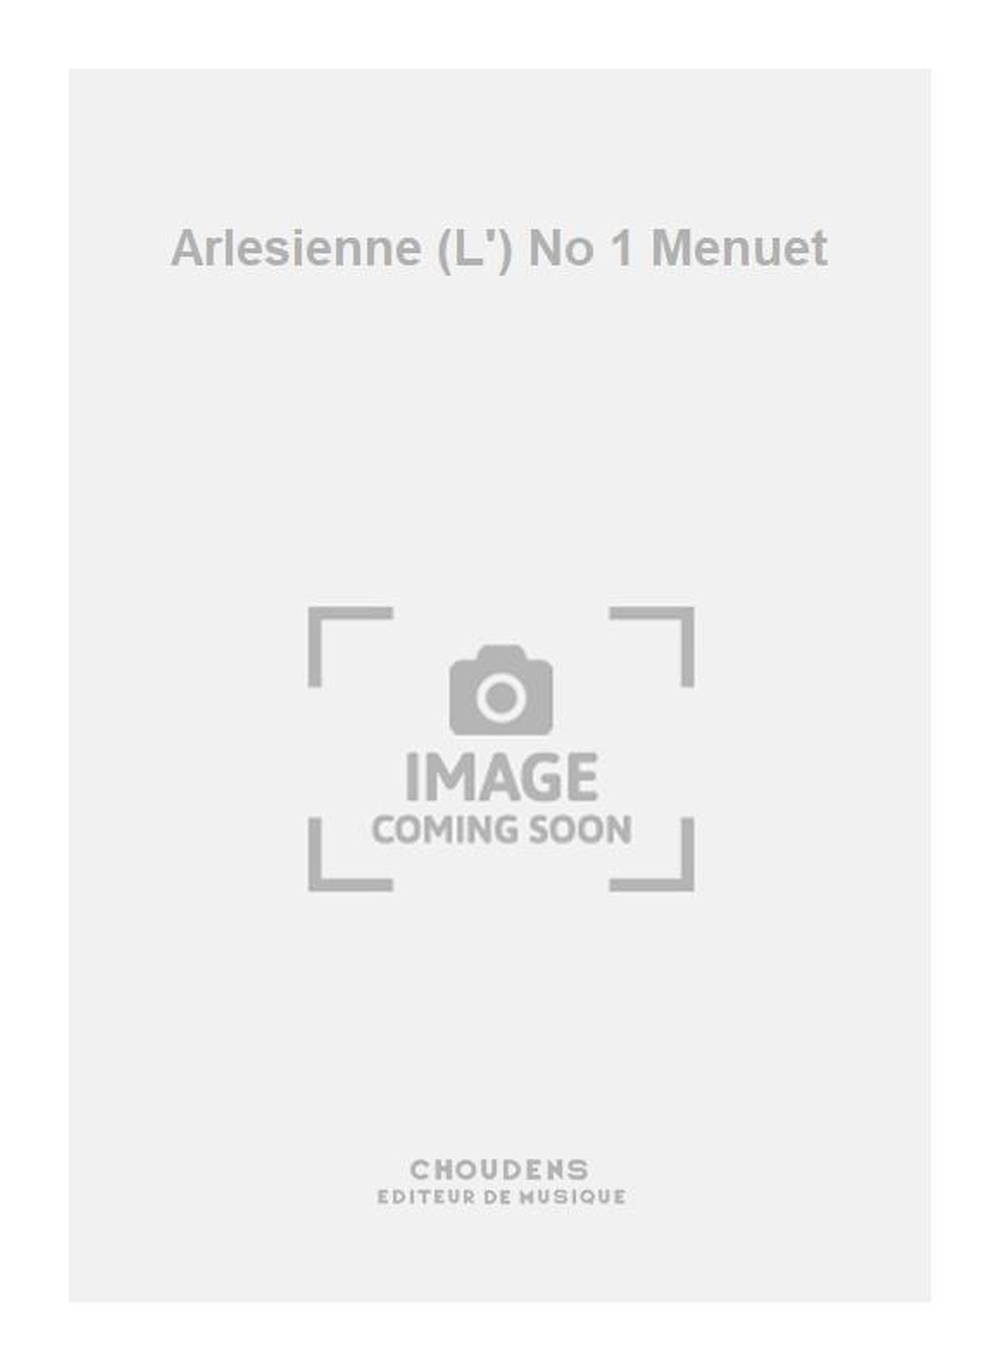 Georges Bizet: Arlesienne (L') No 1 Menuet